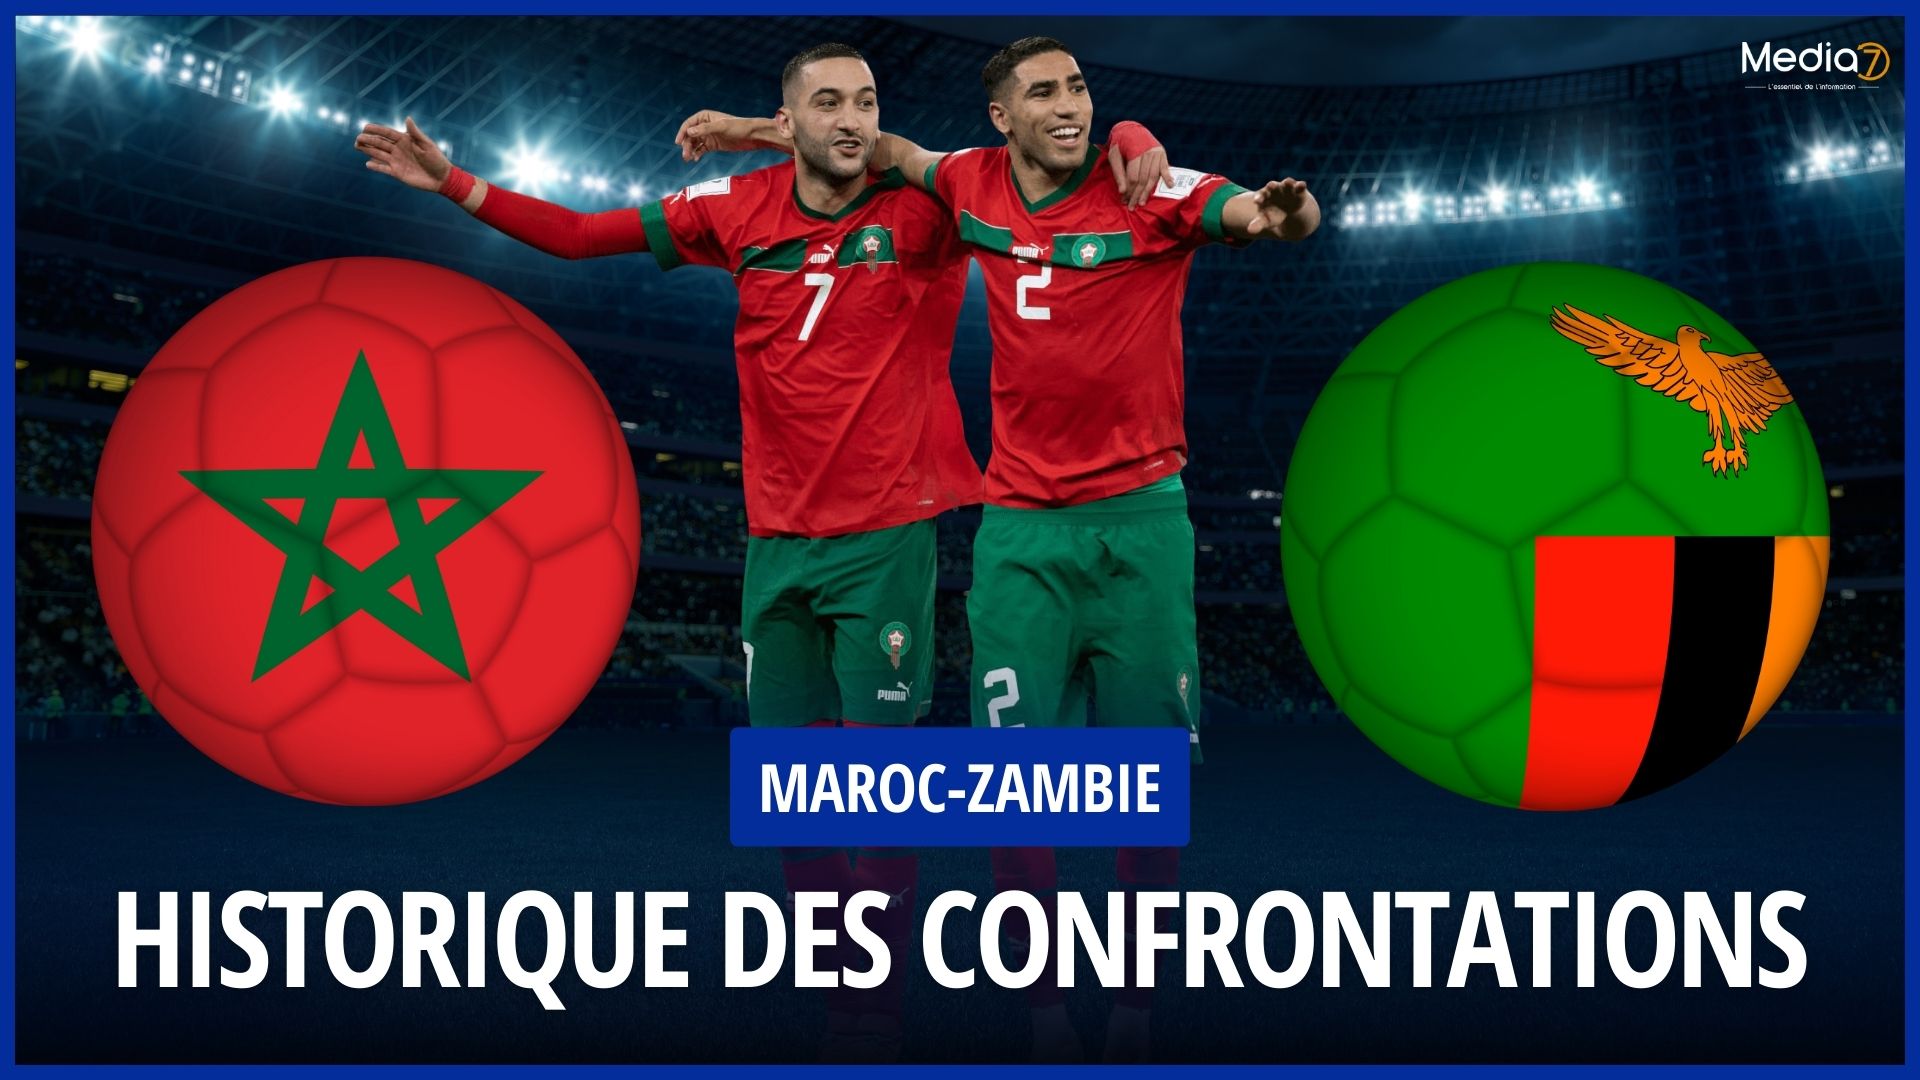 Maroc-Zambie Historique des confrontations